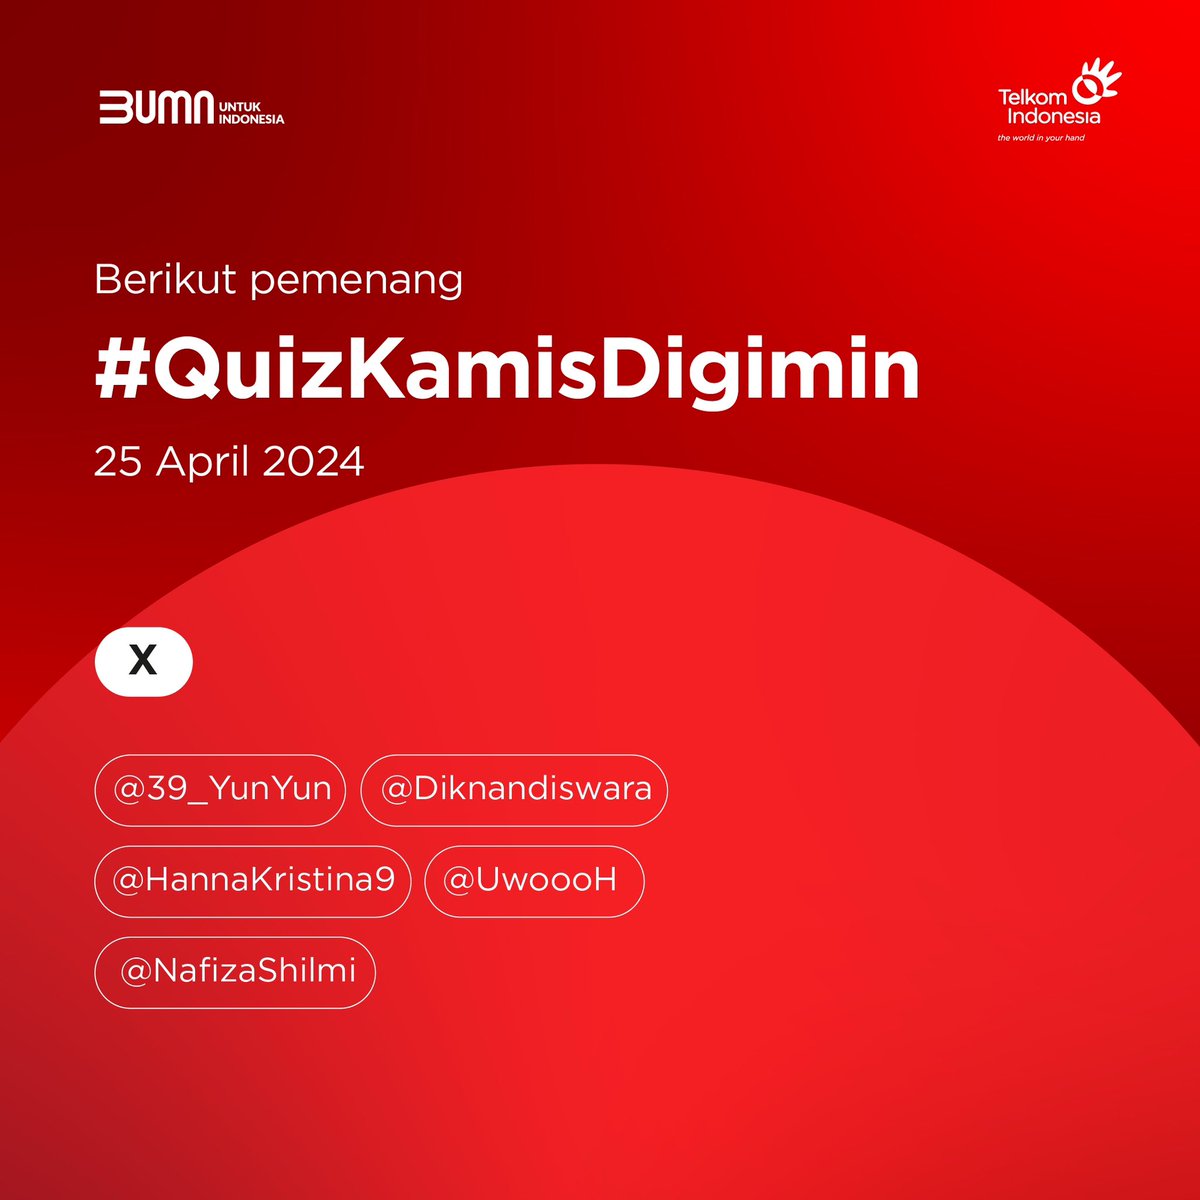 #SobatTelkom, ini dia para pemenang #QuizKamisDigimin tanggal 25 April 2024. Selamat ya!

#ElevatingYourFuture